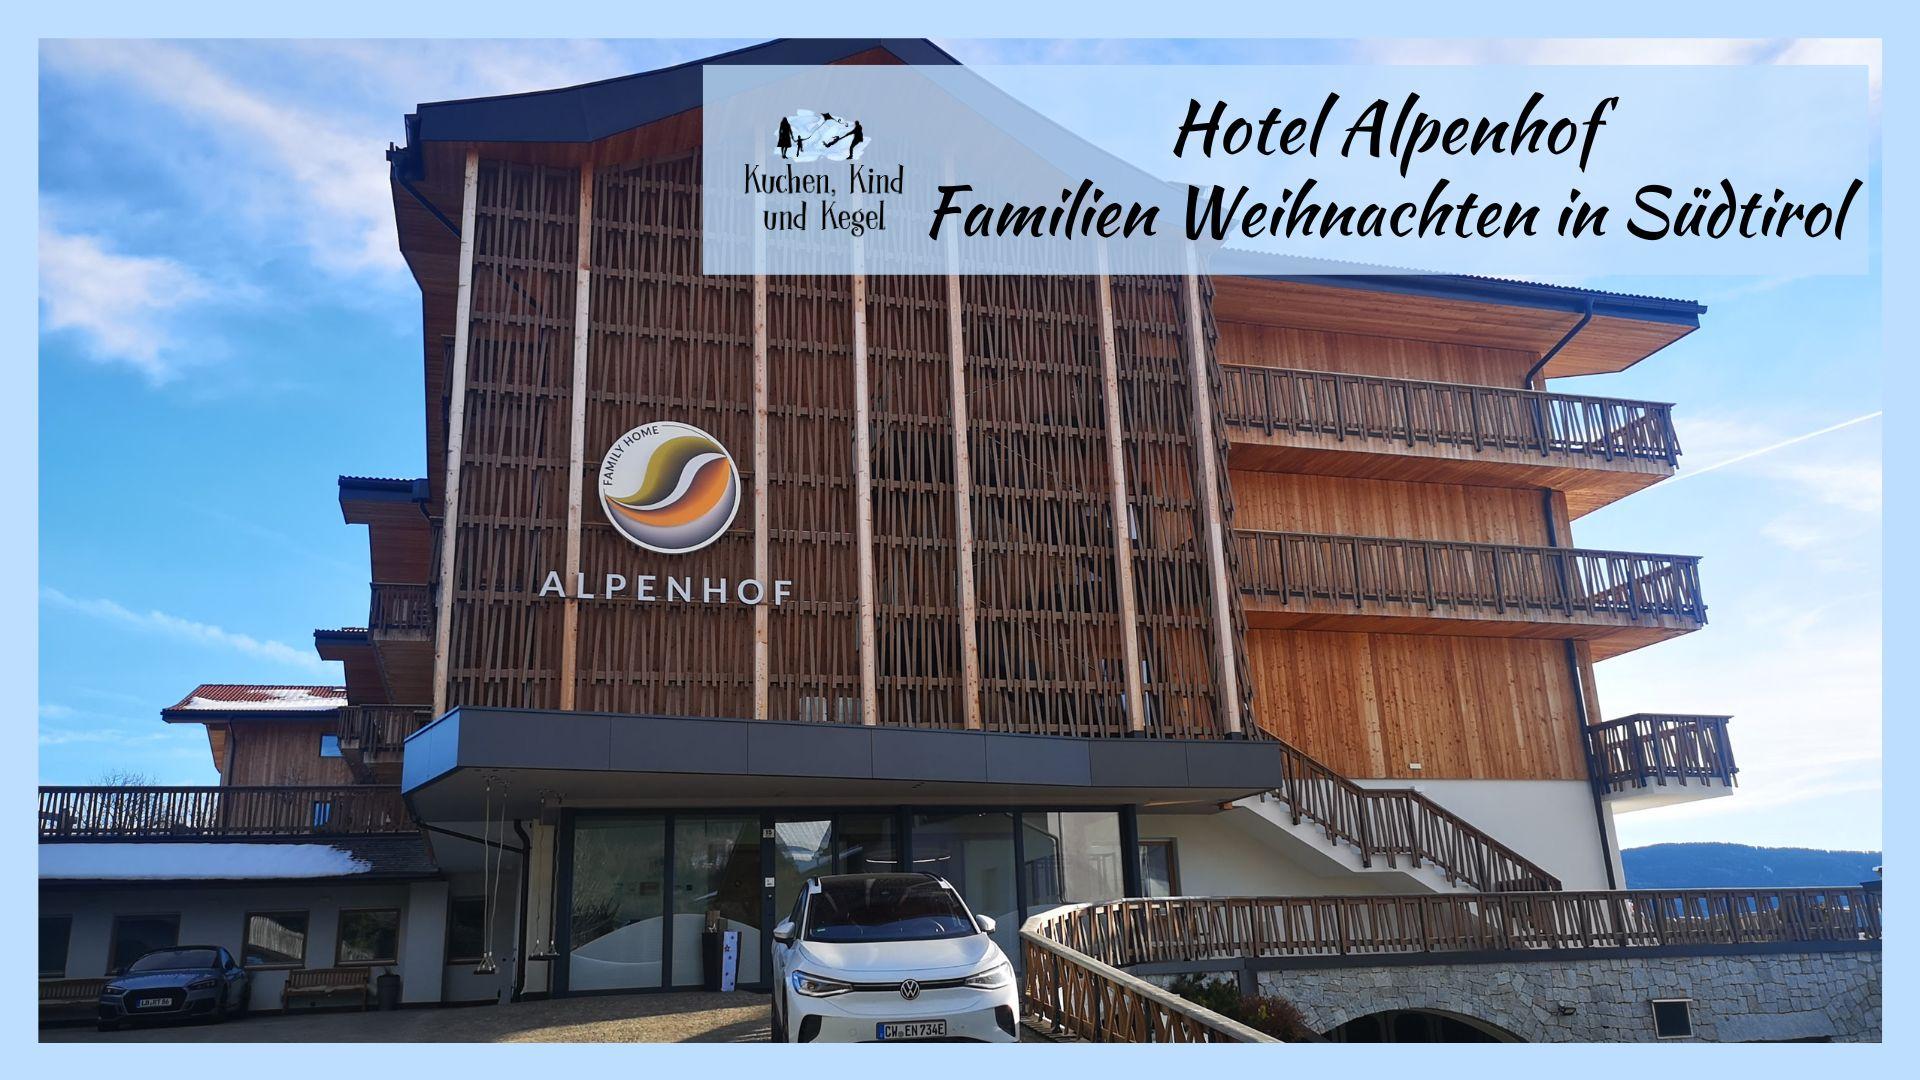 Hotel Alpenhof – Familien Weihnachten in Südtirol